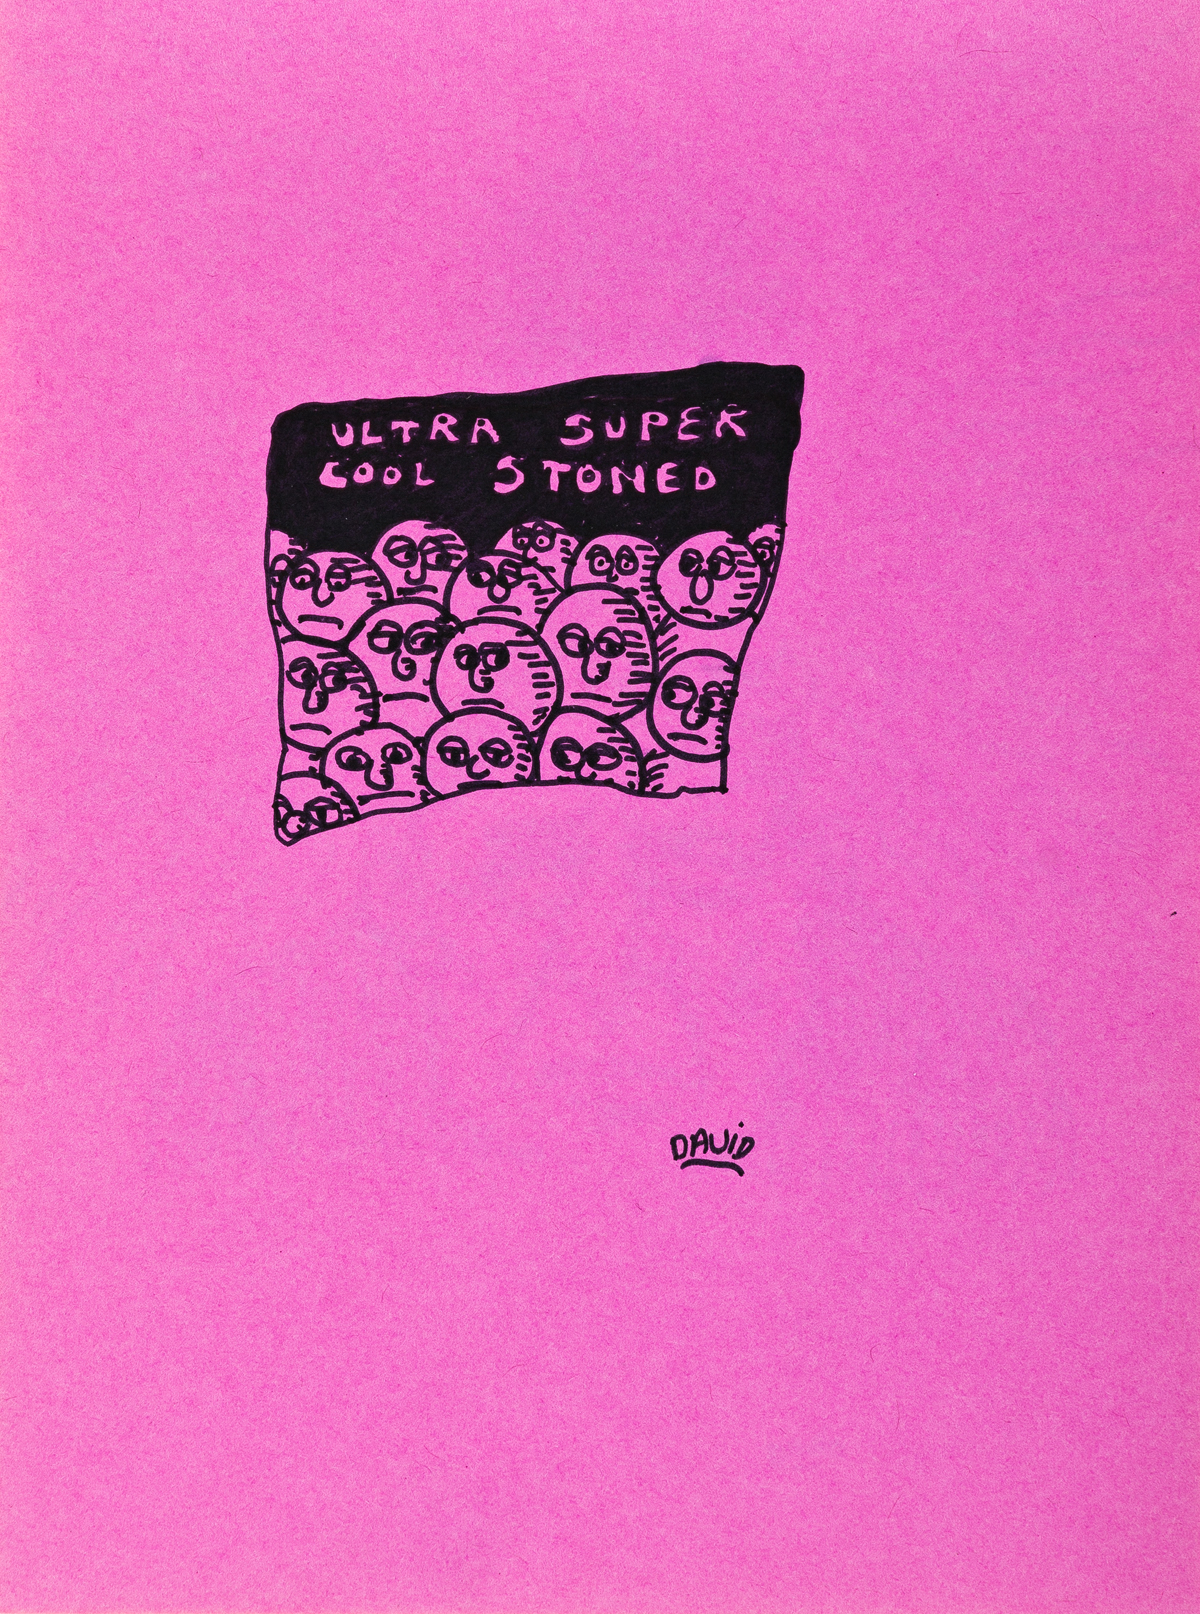 DAVID WOJNAROWICZ (1954 - 1992) Stoned Sketchbook